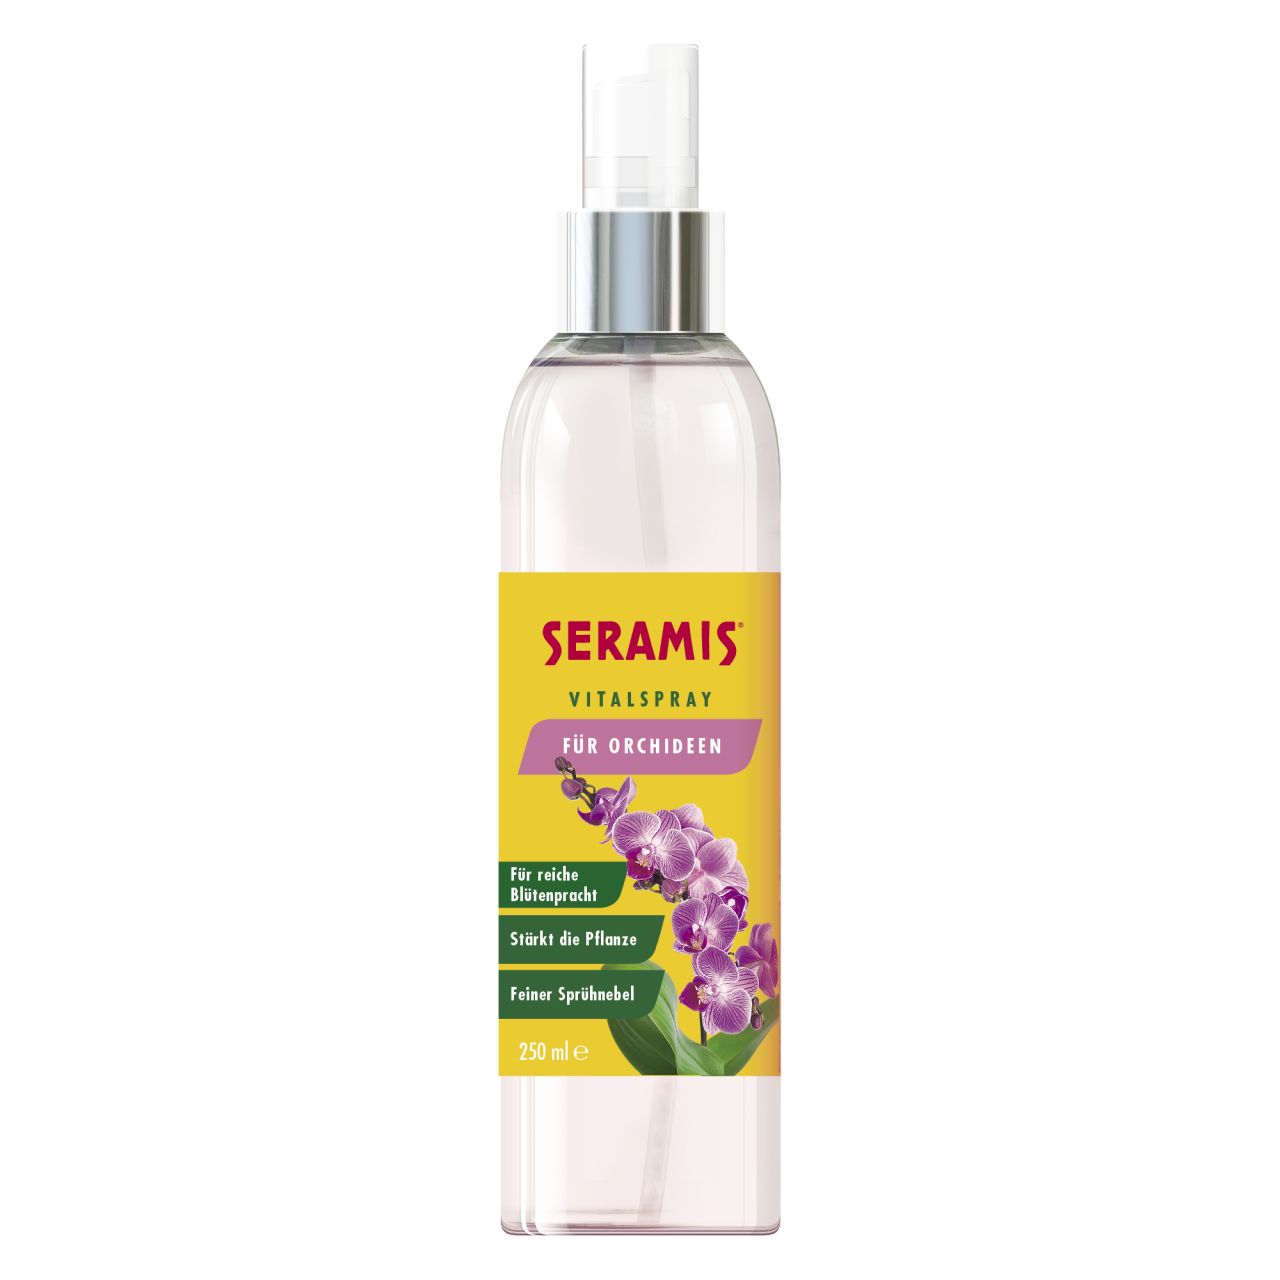 Seramis Vitalspray für Orchideen 250 ml GLO688301565